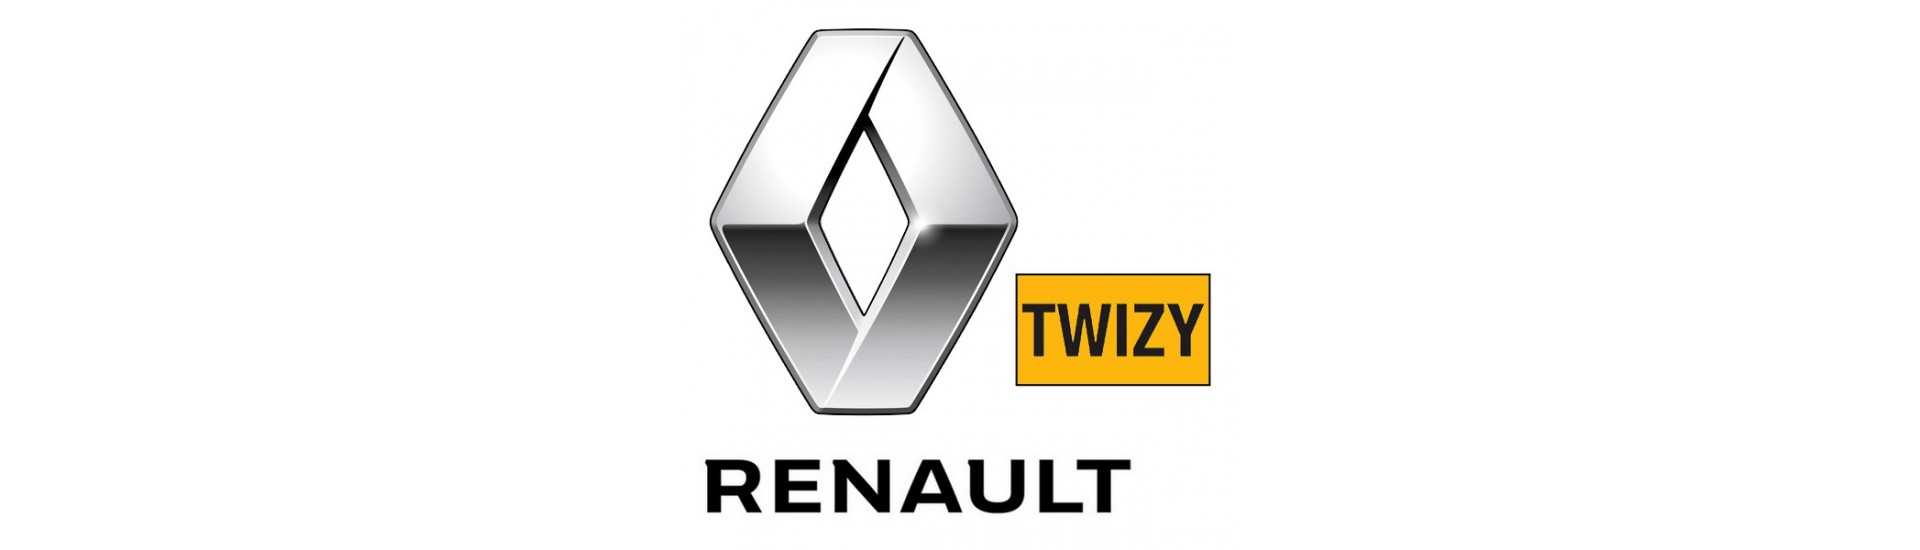 Porta finestra al miglior prezzo dell'auto senza un permesso Renault Twizy